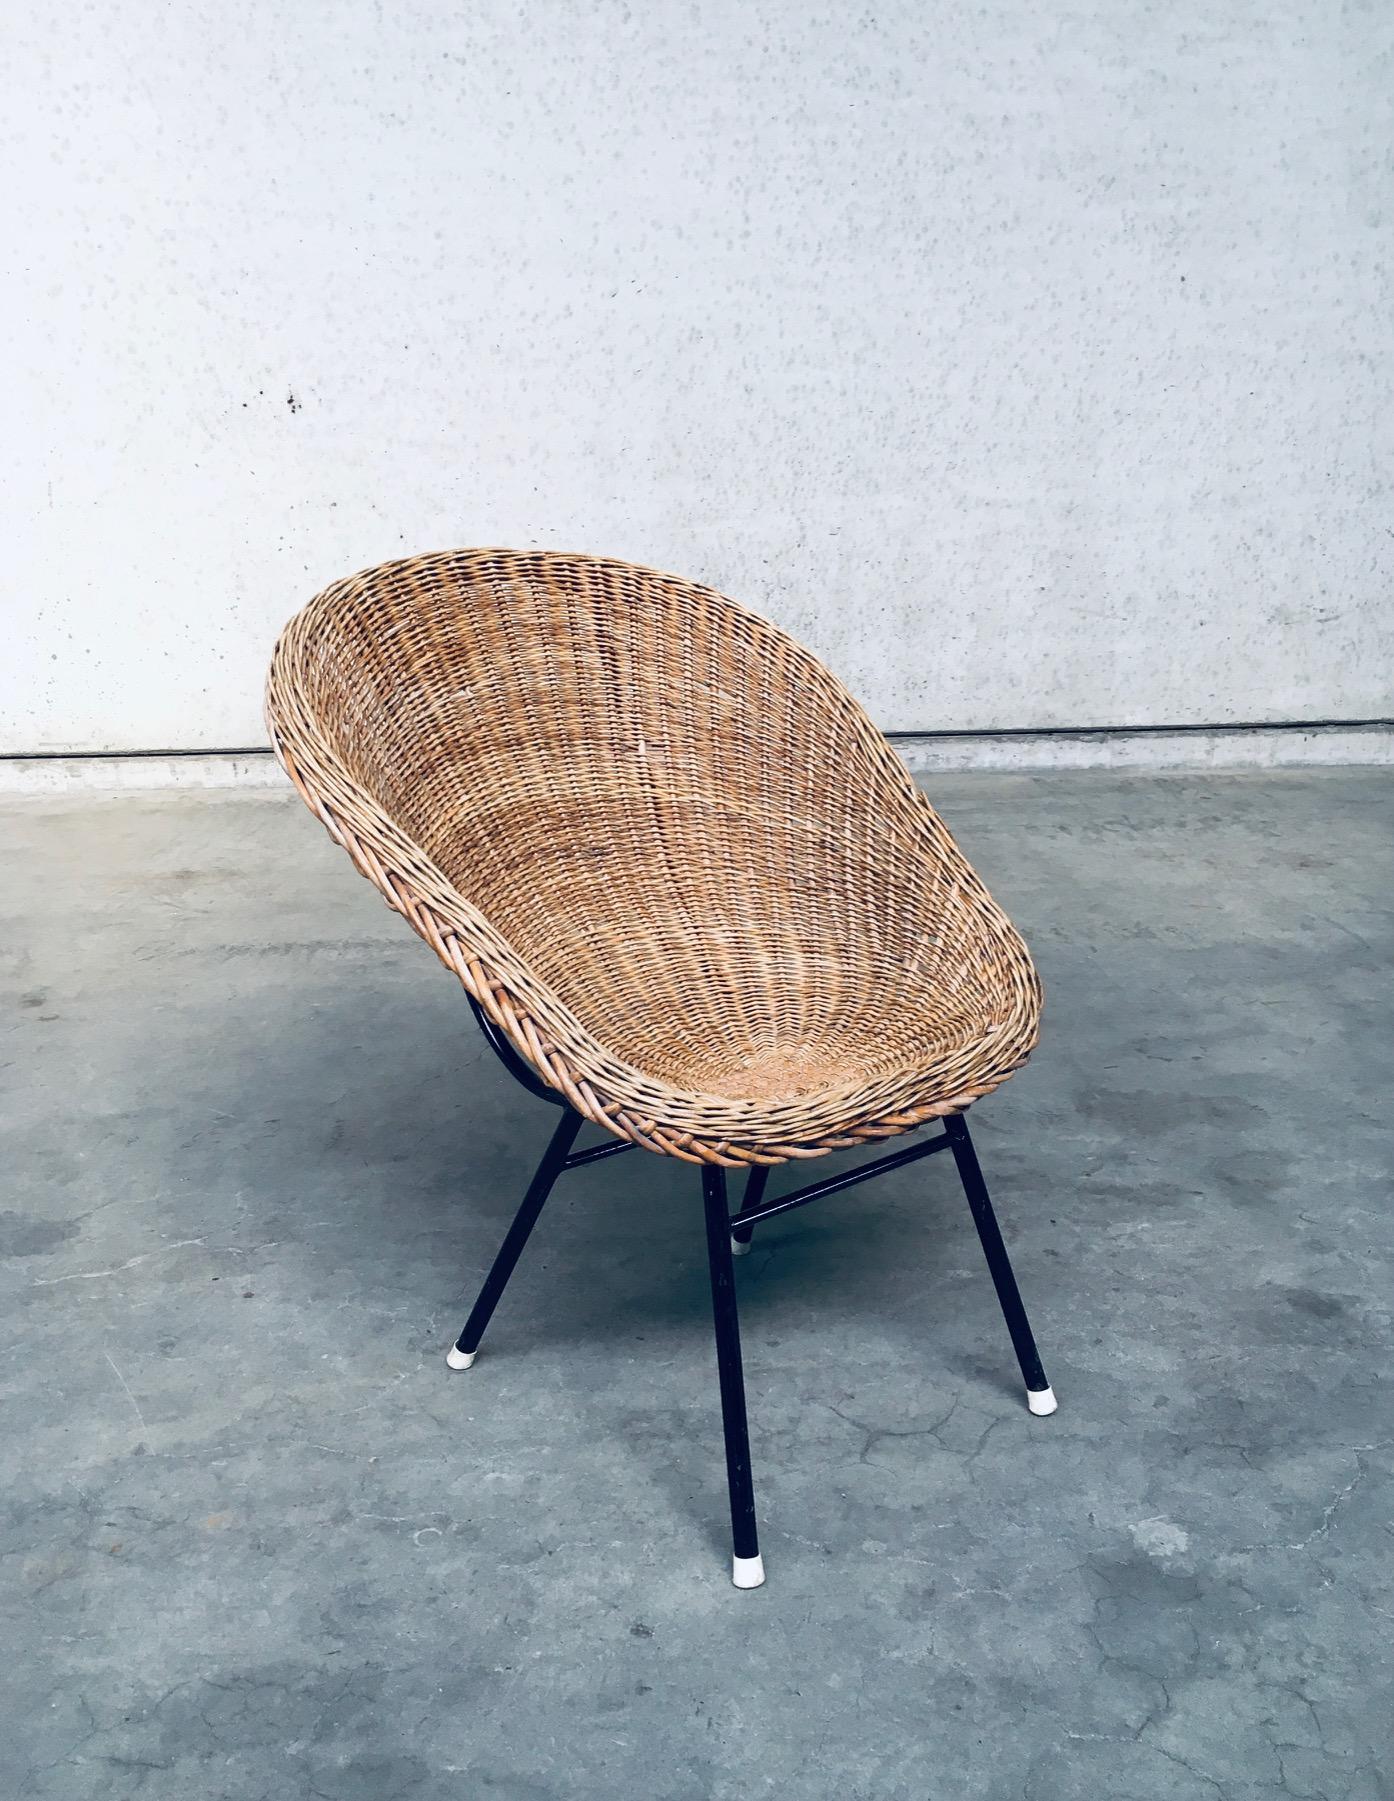 Vintage Midcentury Modern Dutch Design Wicker Lounge Chair im Stil von Dirk Van Sliedregt für Rohé Noordwolde. Hergestellt in den Niederlanden, 1960er Jahre. Rattansitz aus Geflecht auf schwarz lackiertem Stahlgestell mit originalen weißen